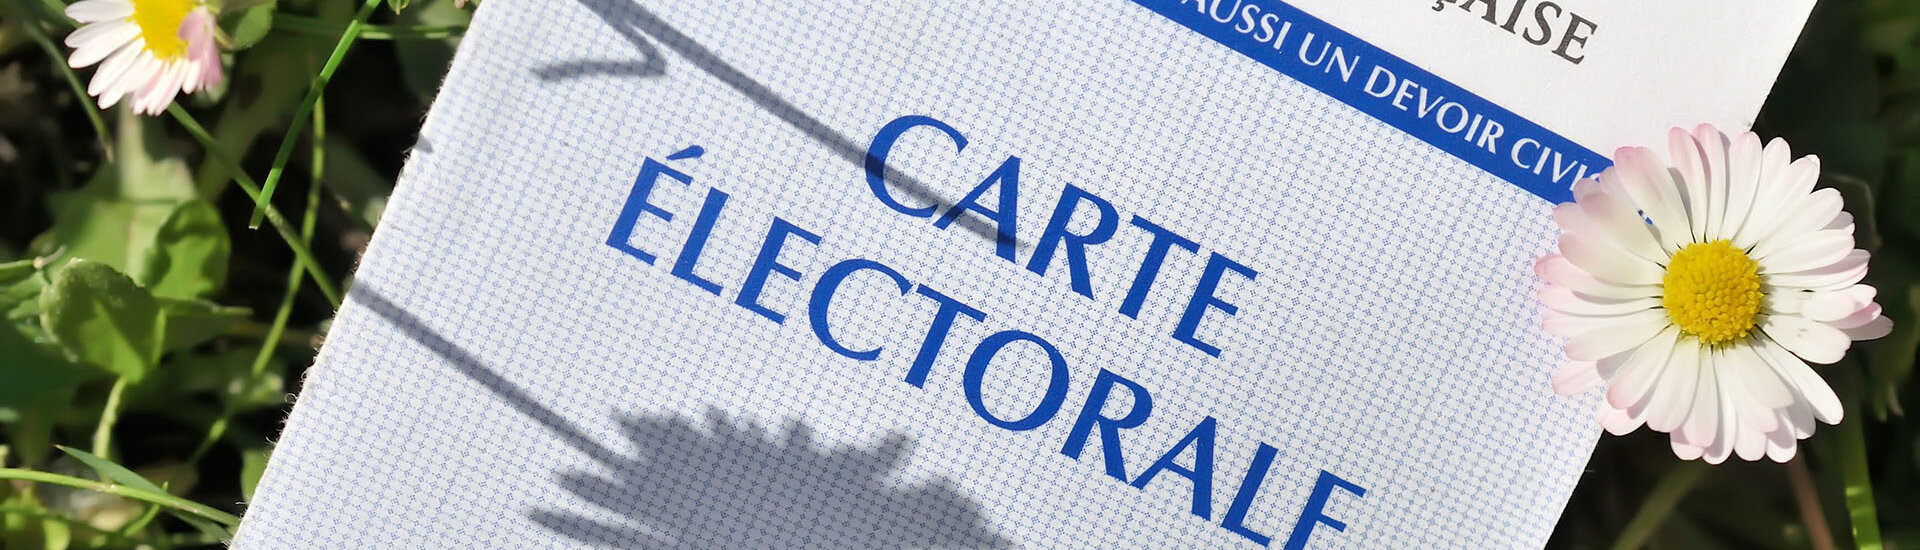 Les résultats d'élections de la Mairie de Cahus dans le lot - 46 